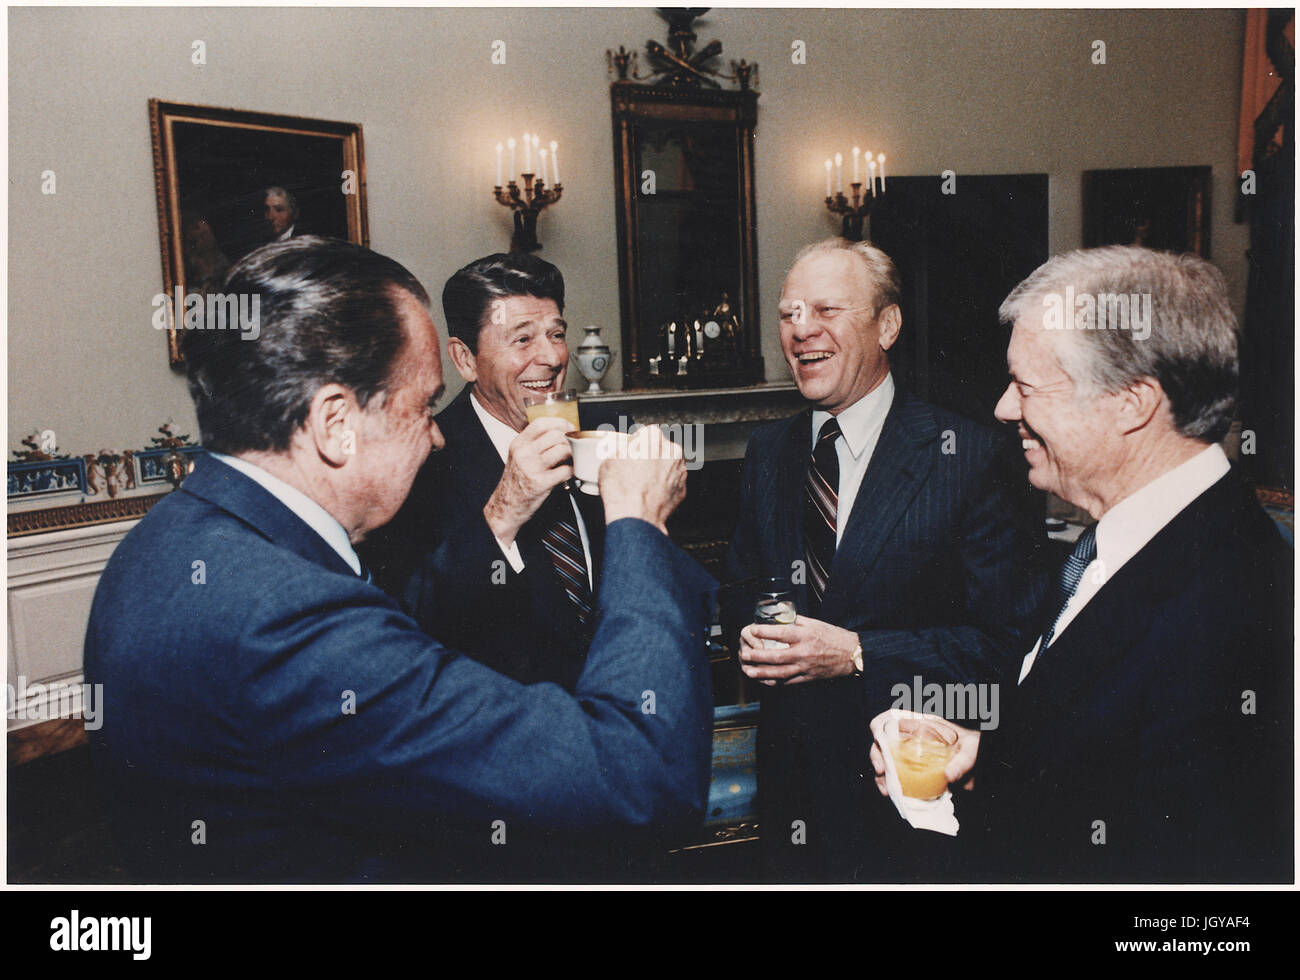 Quatre présidents (Reagan, Carter, Ford, Nixon) Le grillage dans la salle bleue avant de partir pour l'Égypte et de l'Enterrement de Sadate Banque D'Images